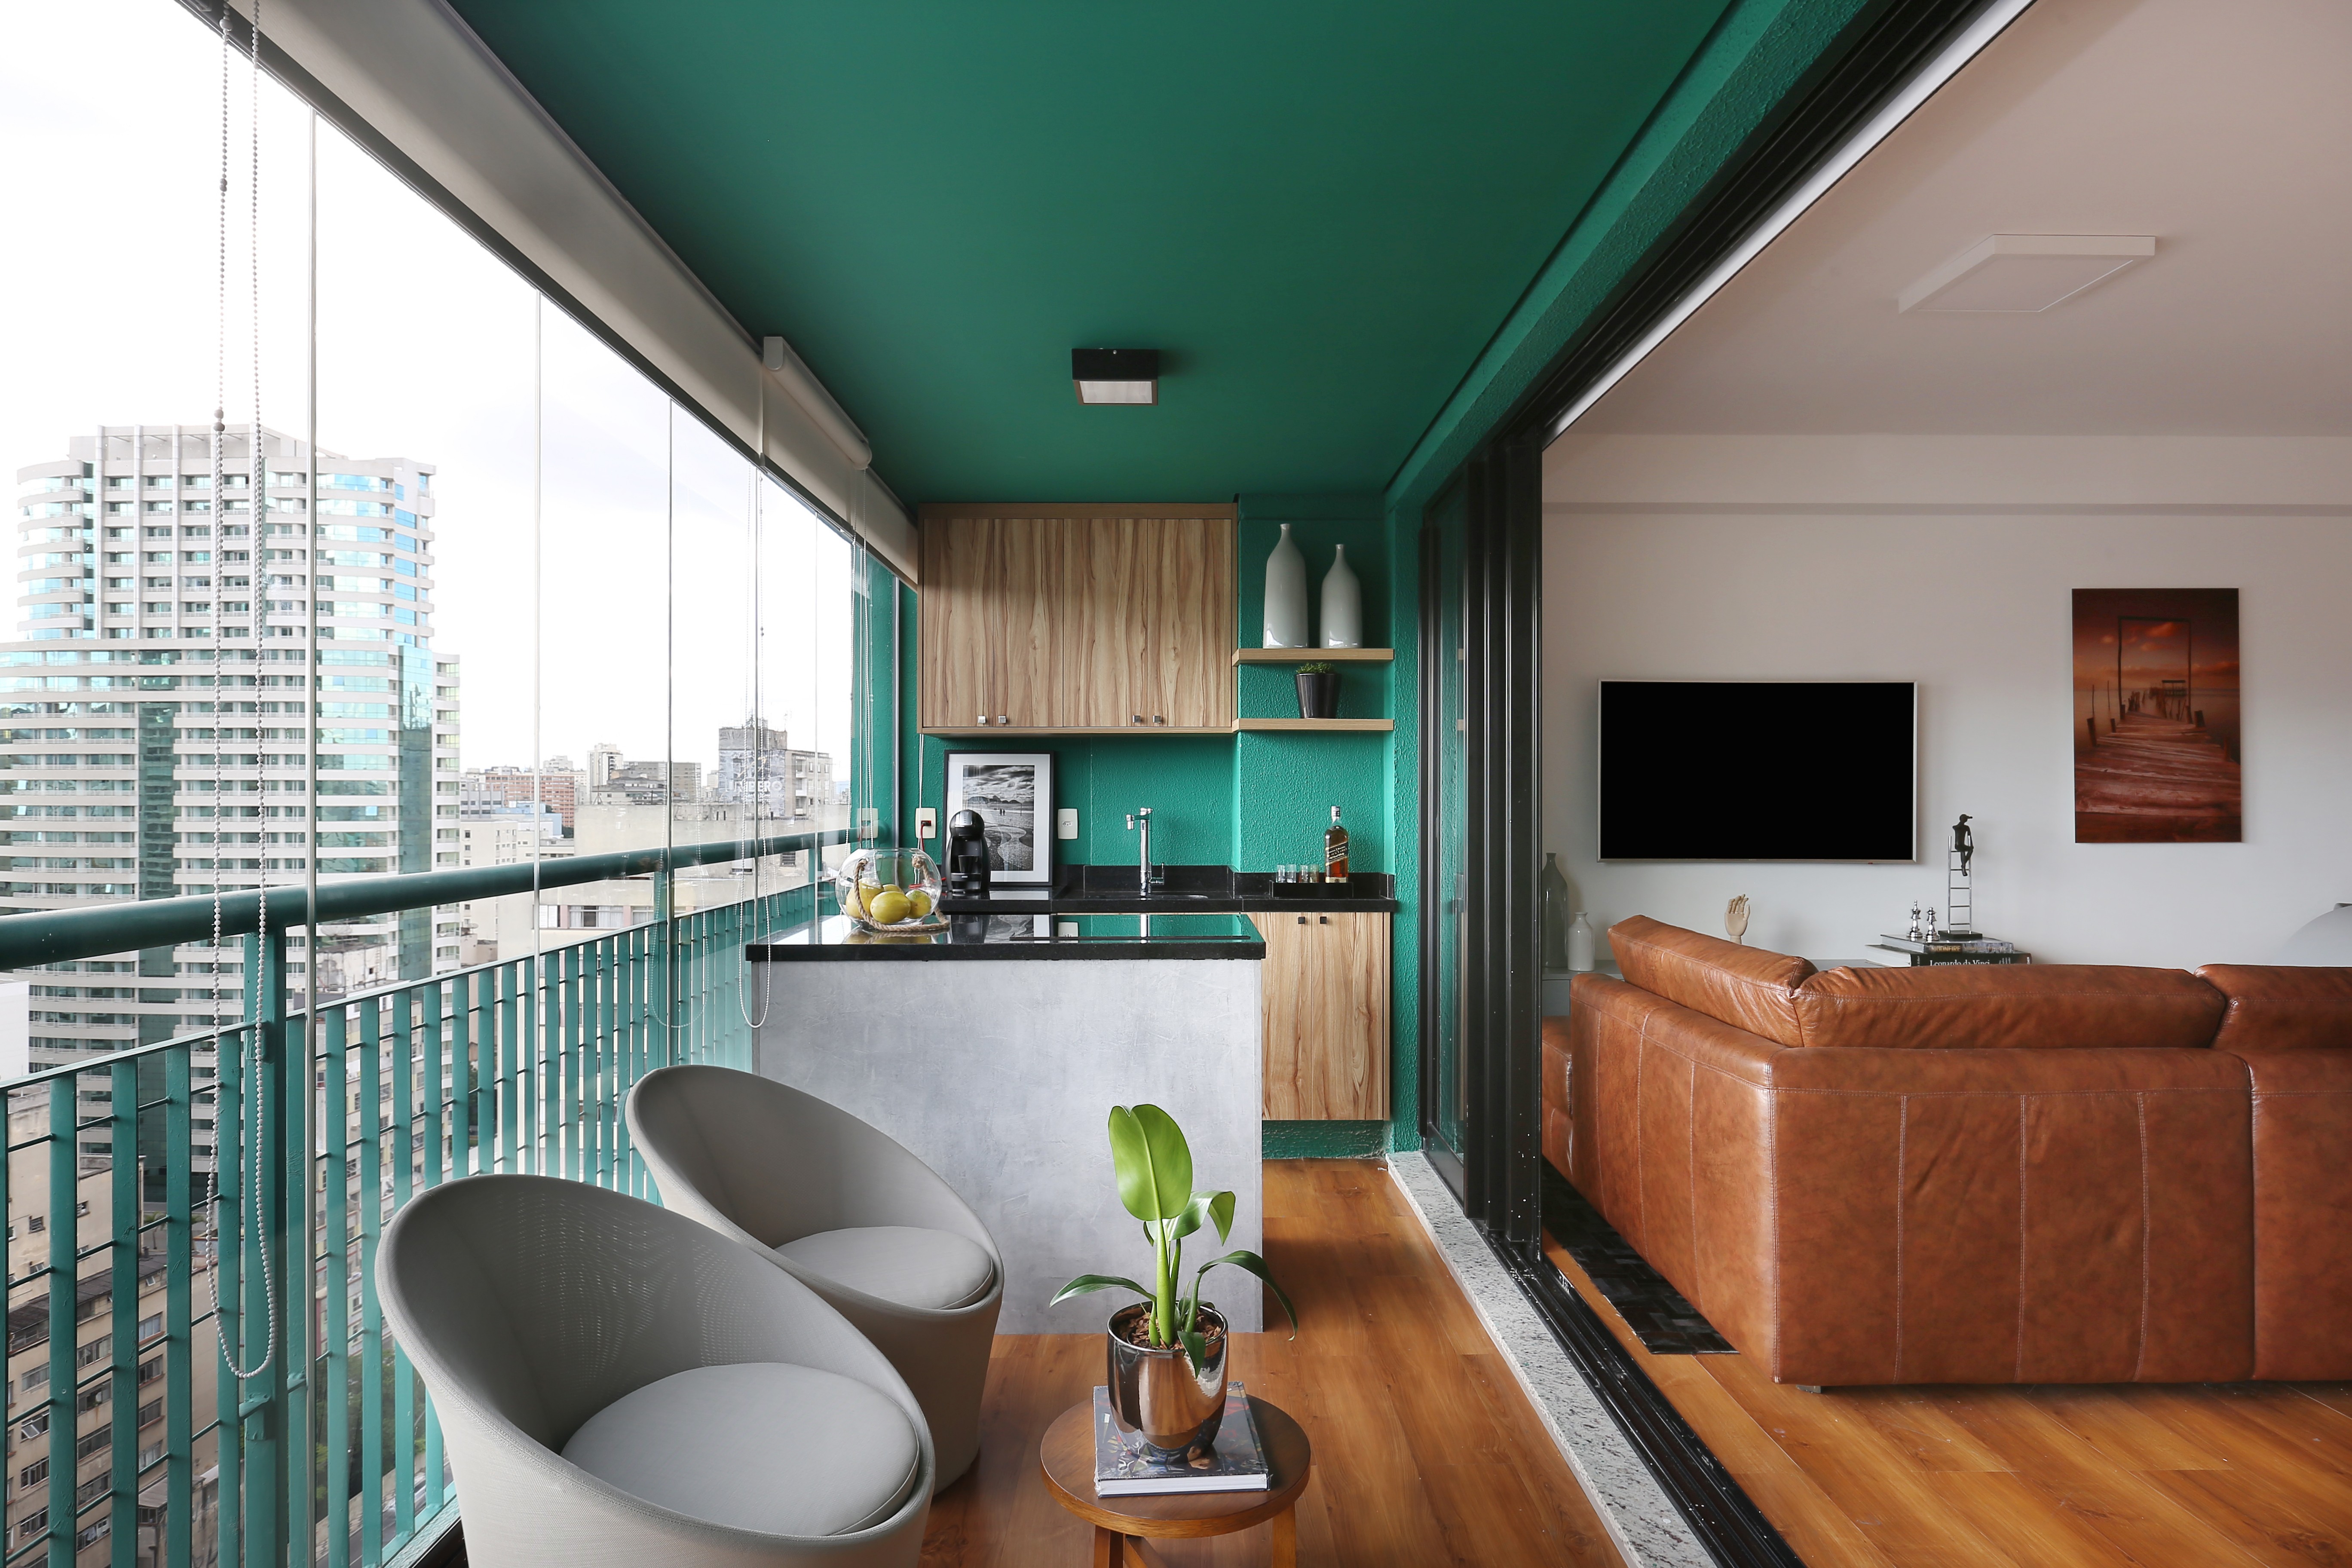 Varanda de apartamento do Edifício Brasil, em São Paulo, é colorida; o verde é uma das cores que se destaca na decoração desse apê minimalista (Foto: Mariana Orsi)